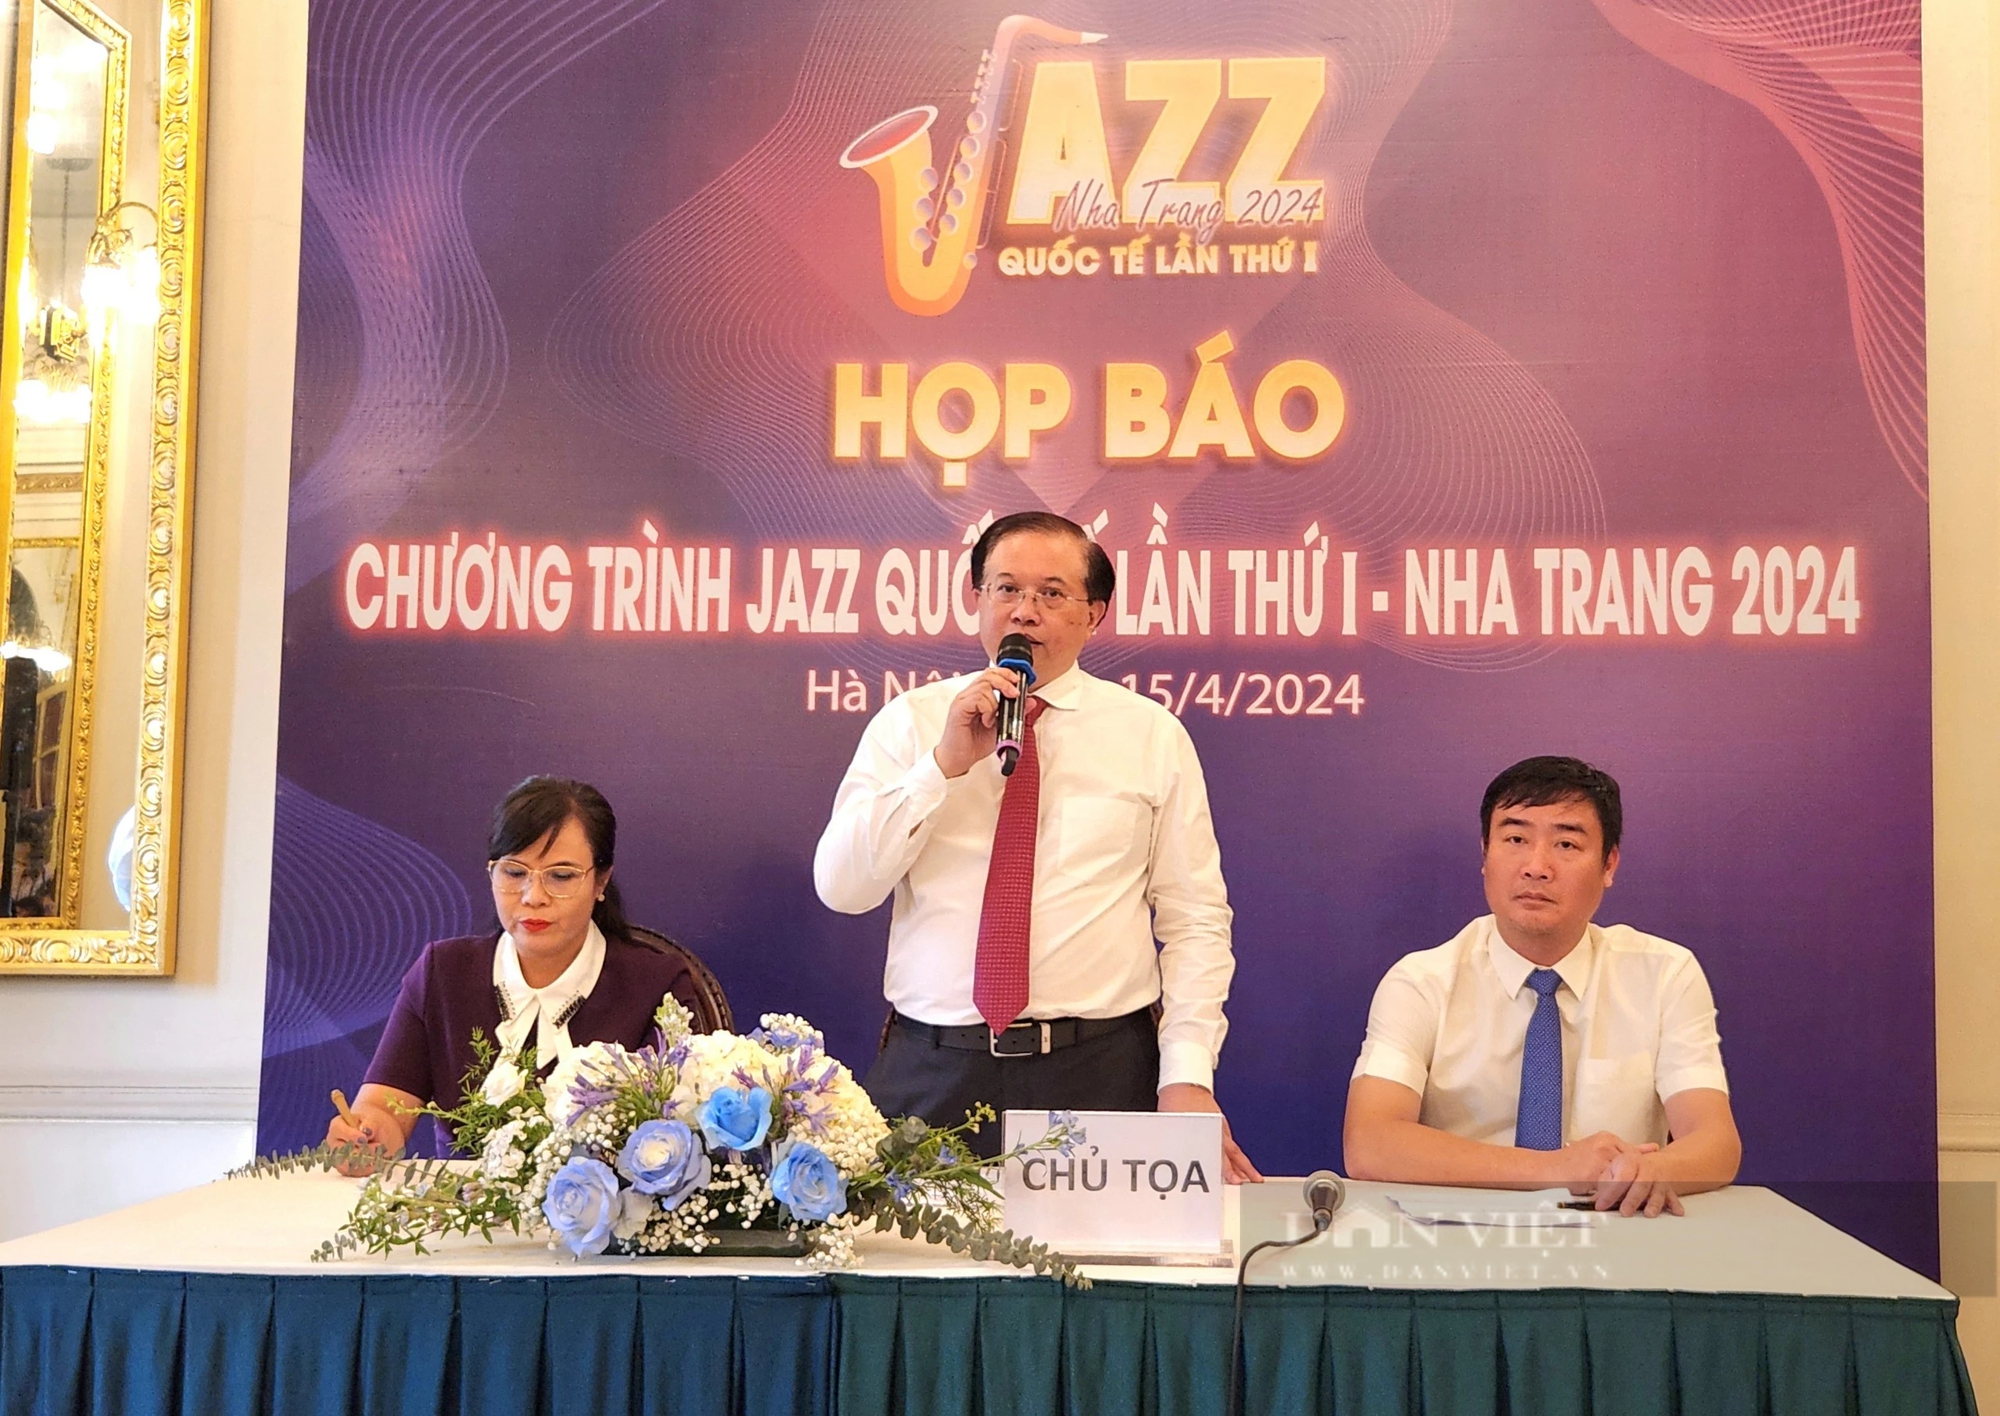 Mỹ Linh, Thu Minh cùng loạt sao nhạc Jazz quốc tế sẽ làm điều này tại Nha Trang vào tháng 4/2024- Ảnh 1.